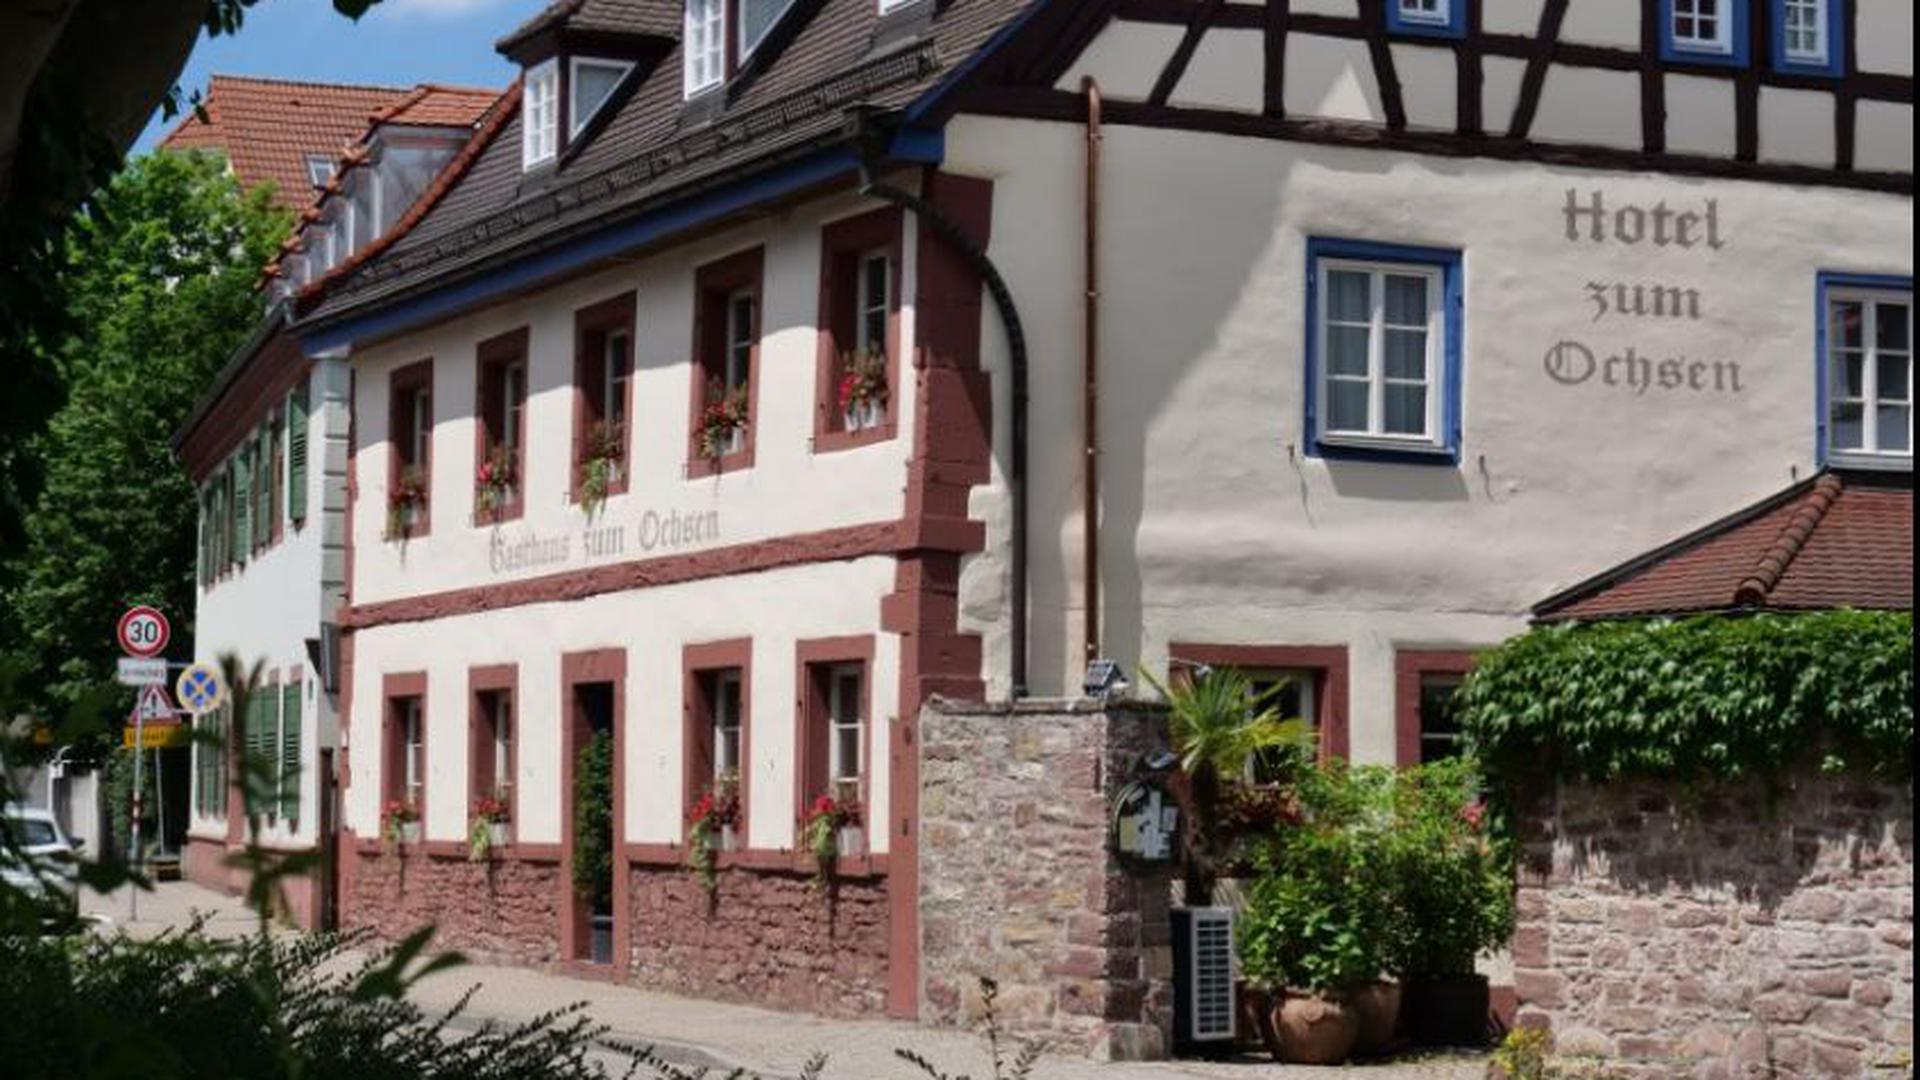 Traditionshaus: Das Restaurant und Hotel „Zum Ochsen“ ist eine Durlacher Institution. Seine Zukunft indes ist derzeit ungewiss.